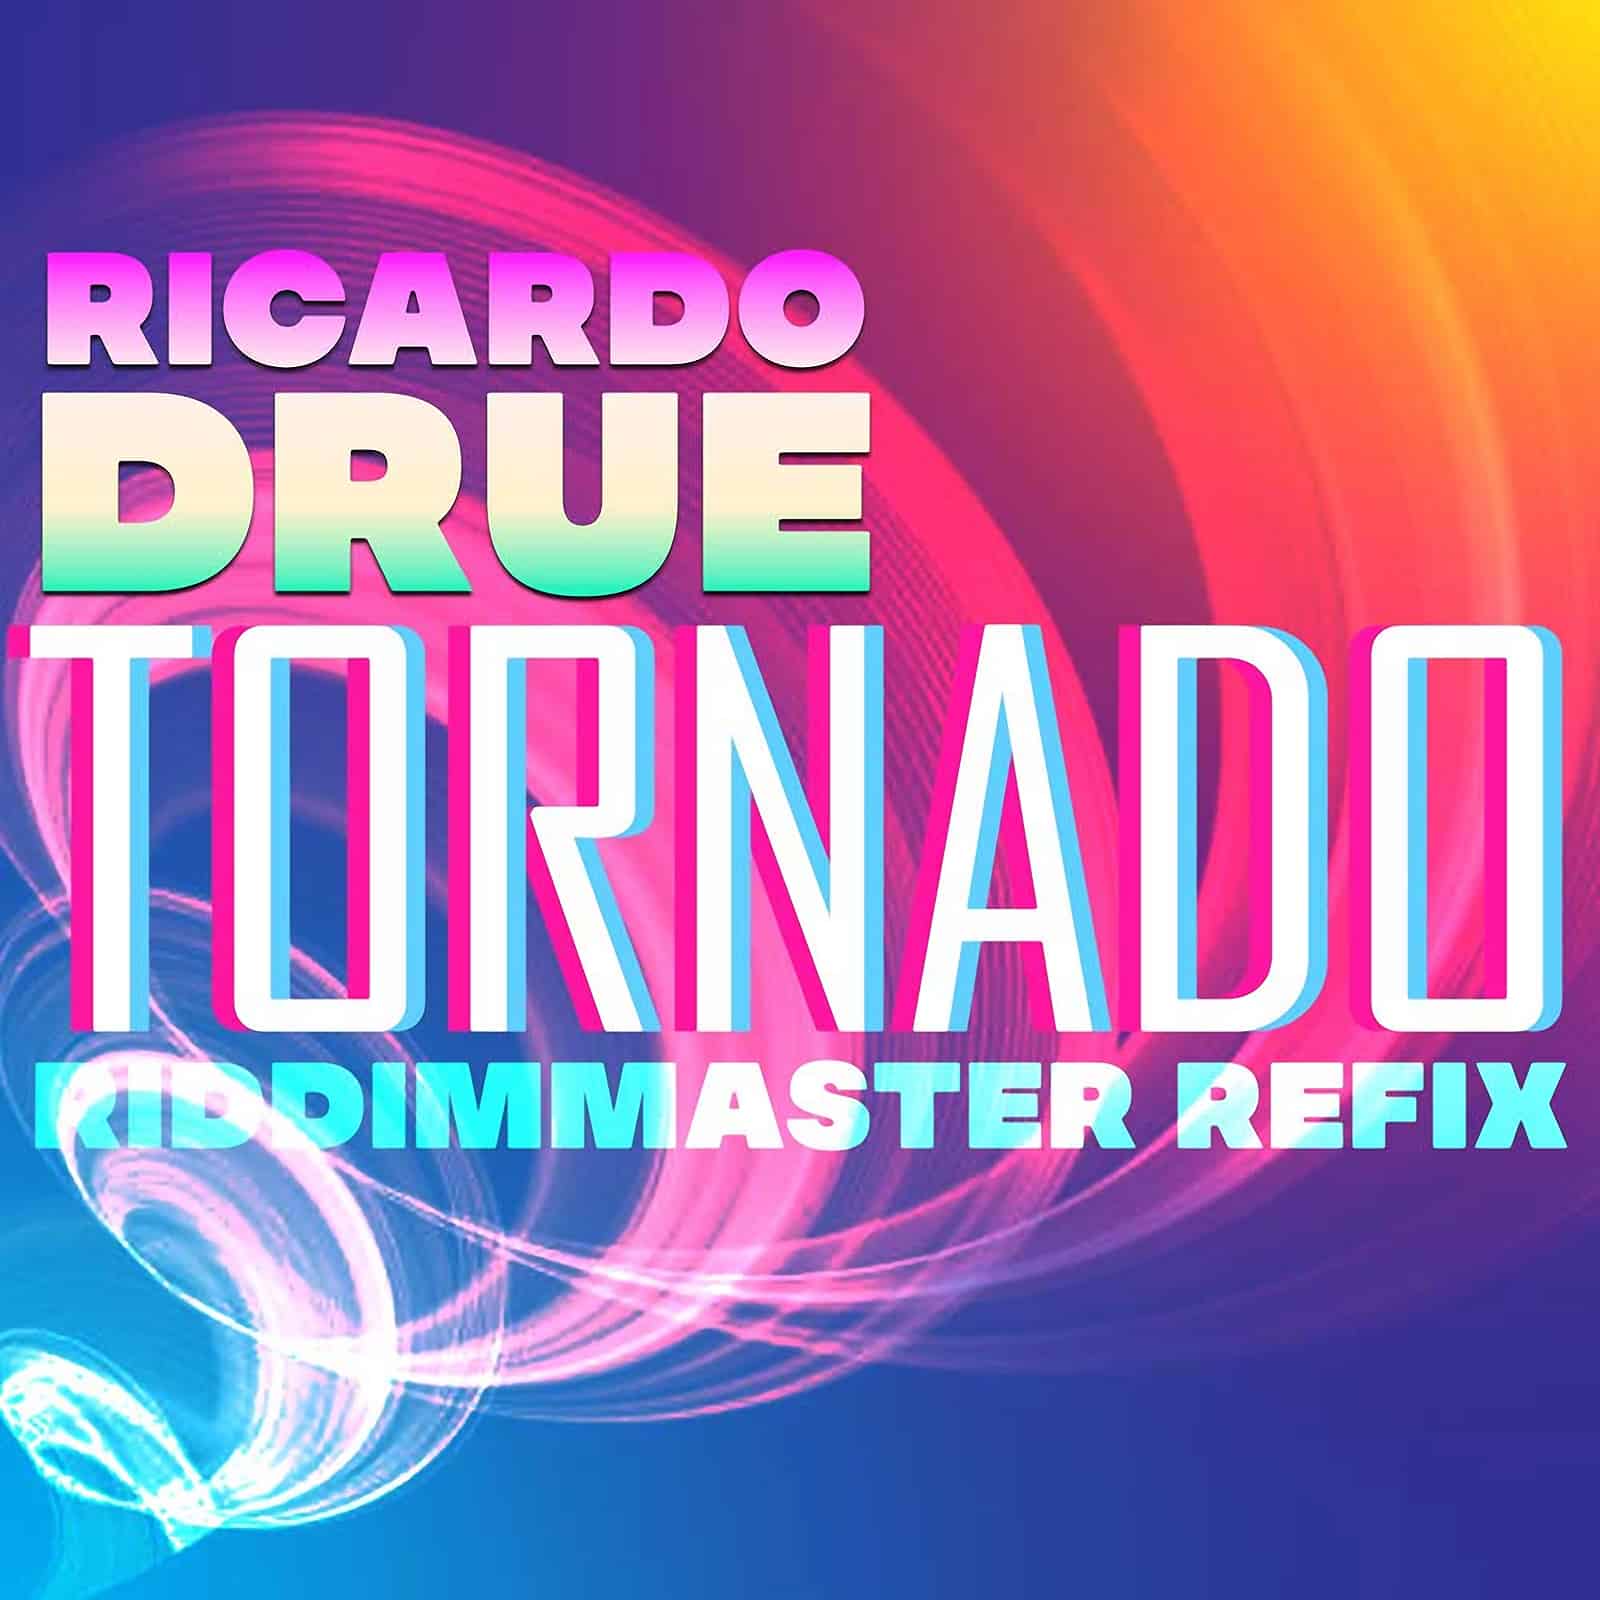 Ricardo Drue - Tornado - Riddimmaster Refix